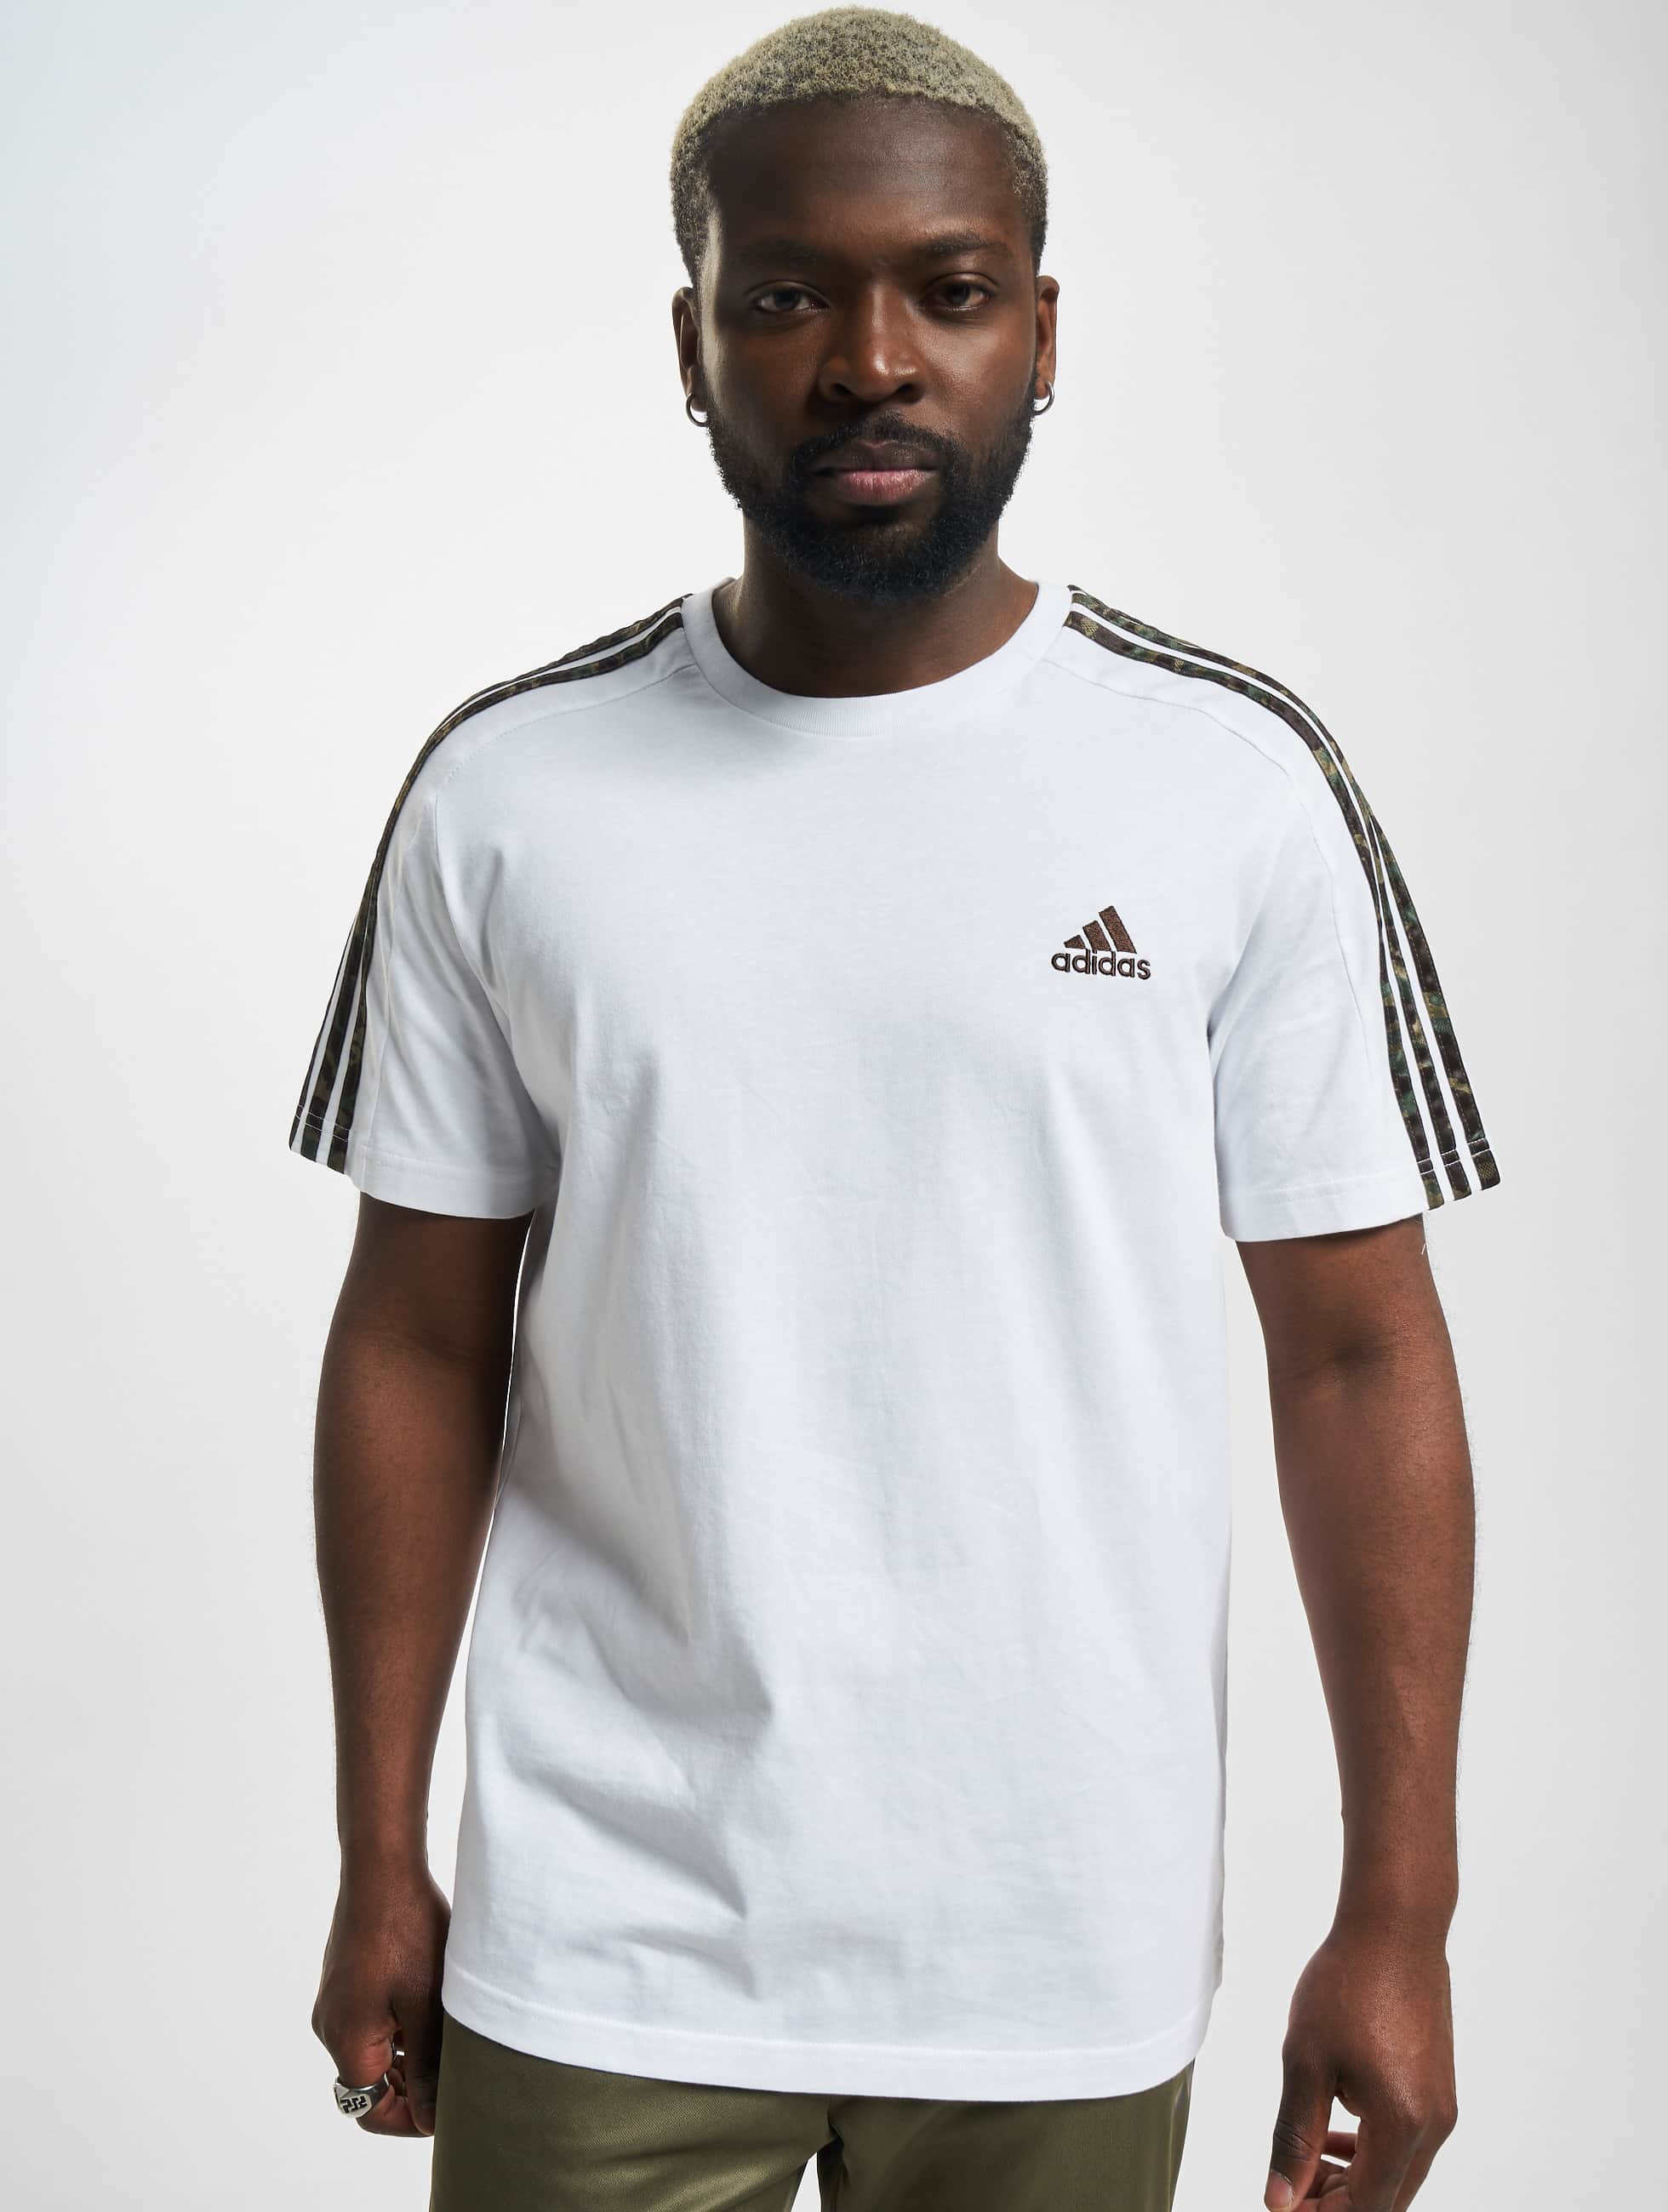 adidas Originals Overwear / T-Shirt Originals in white 970712